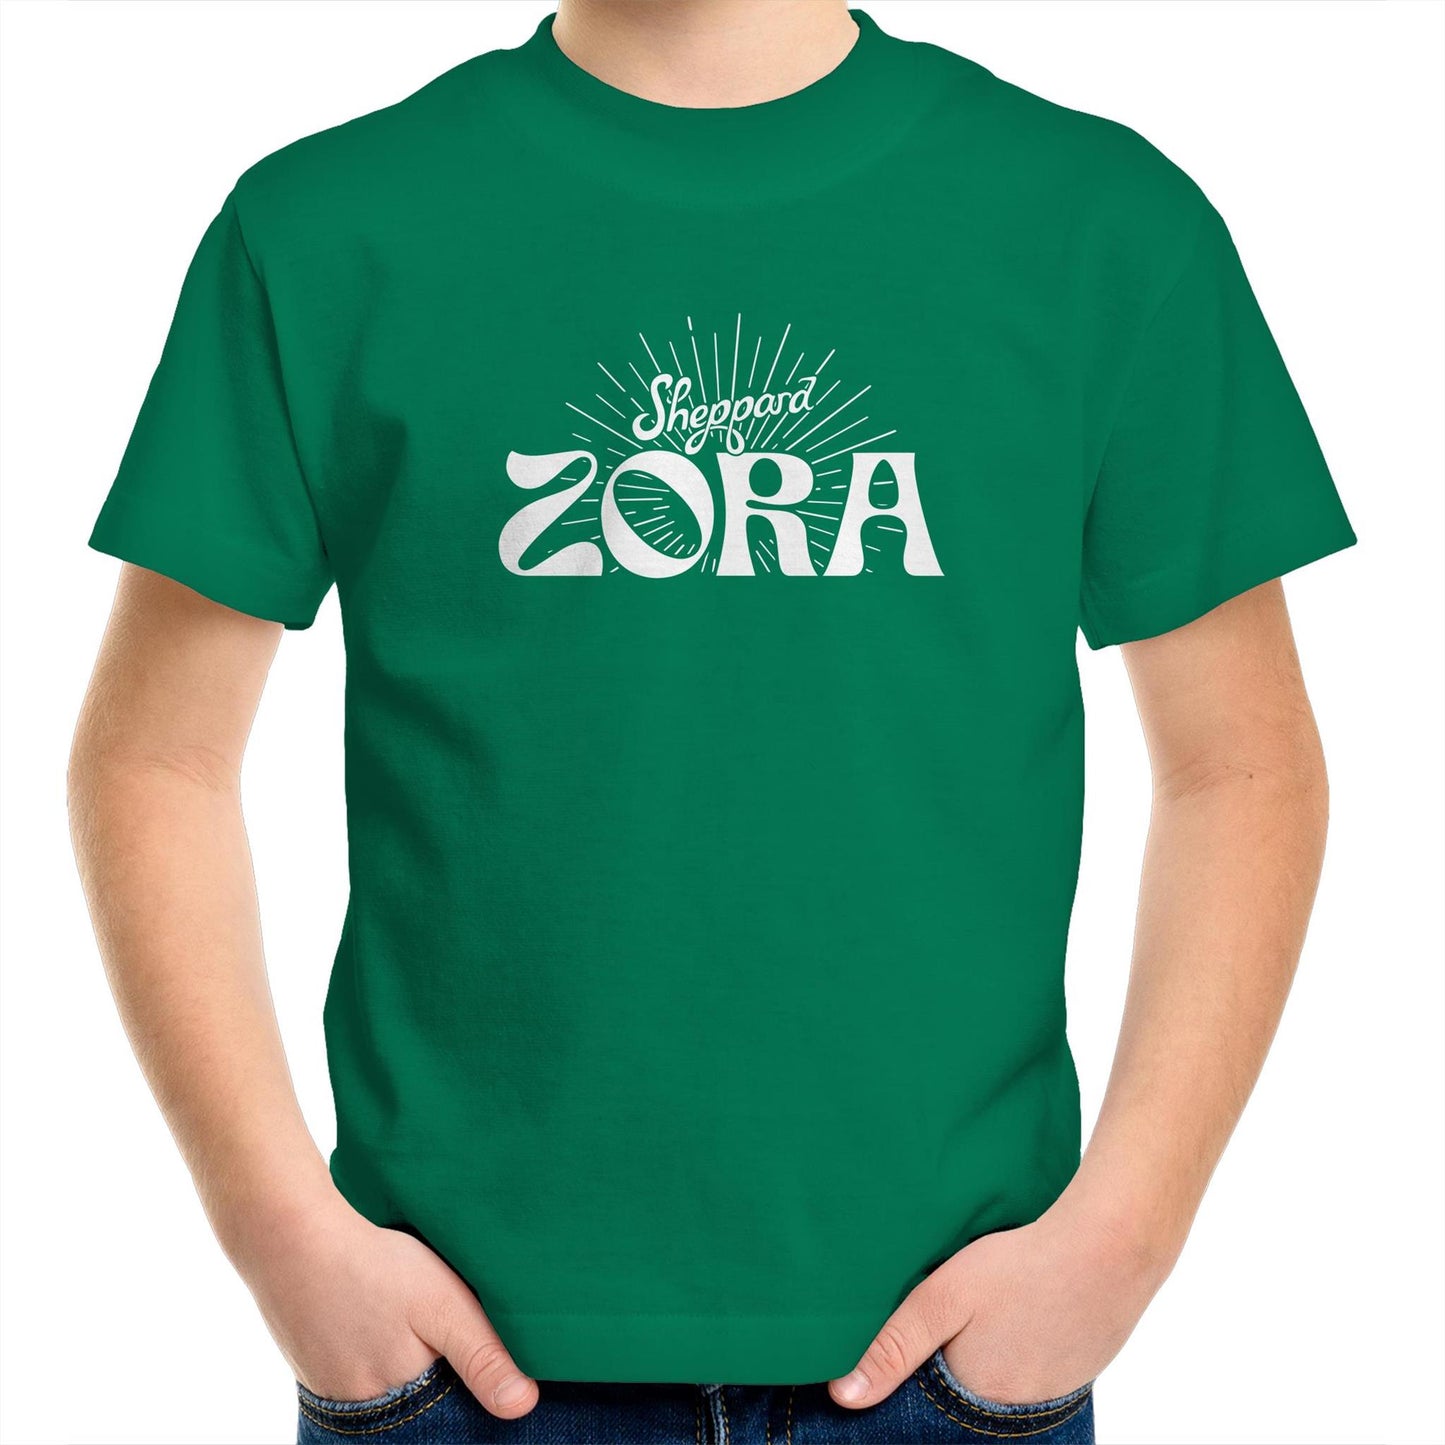 Zora Kids T-Shirt